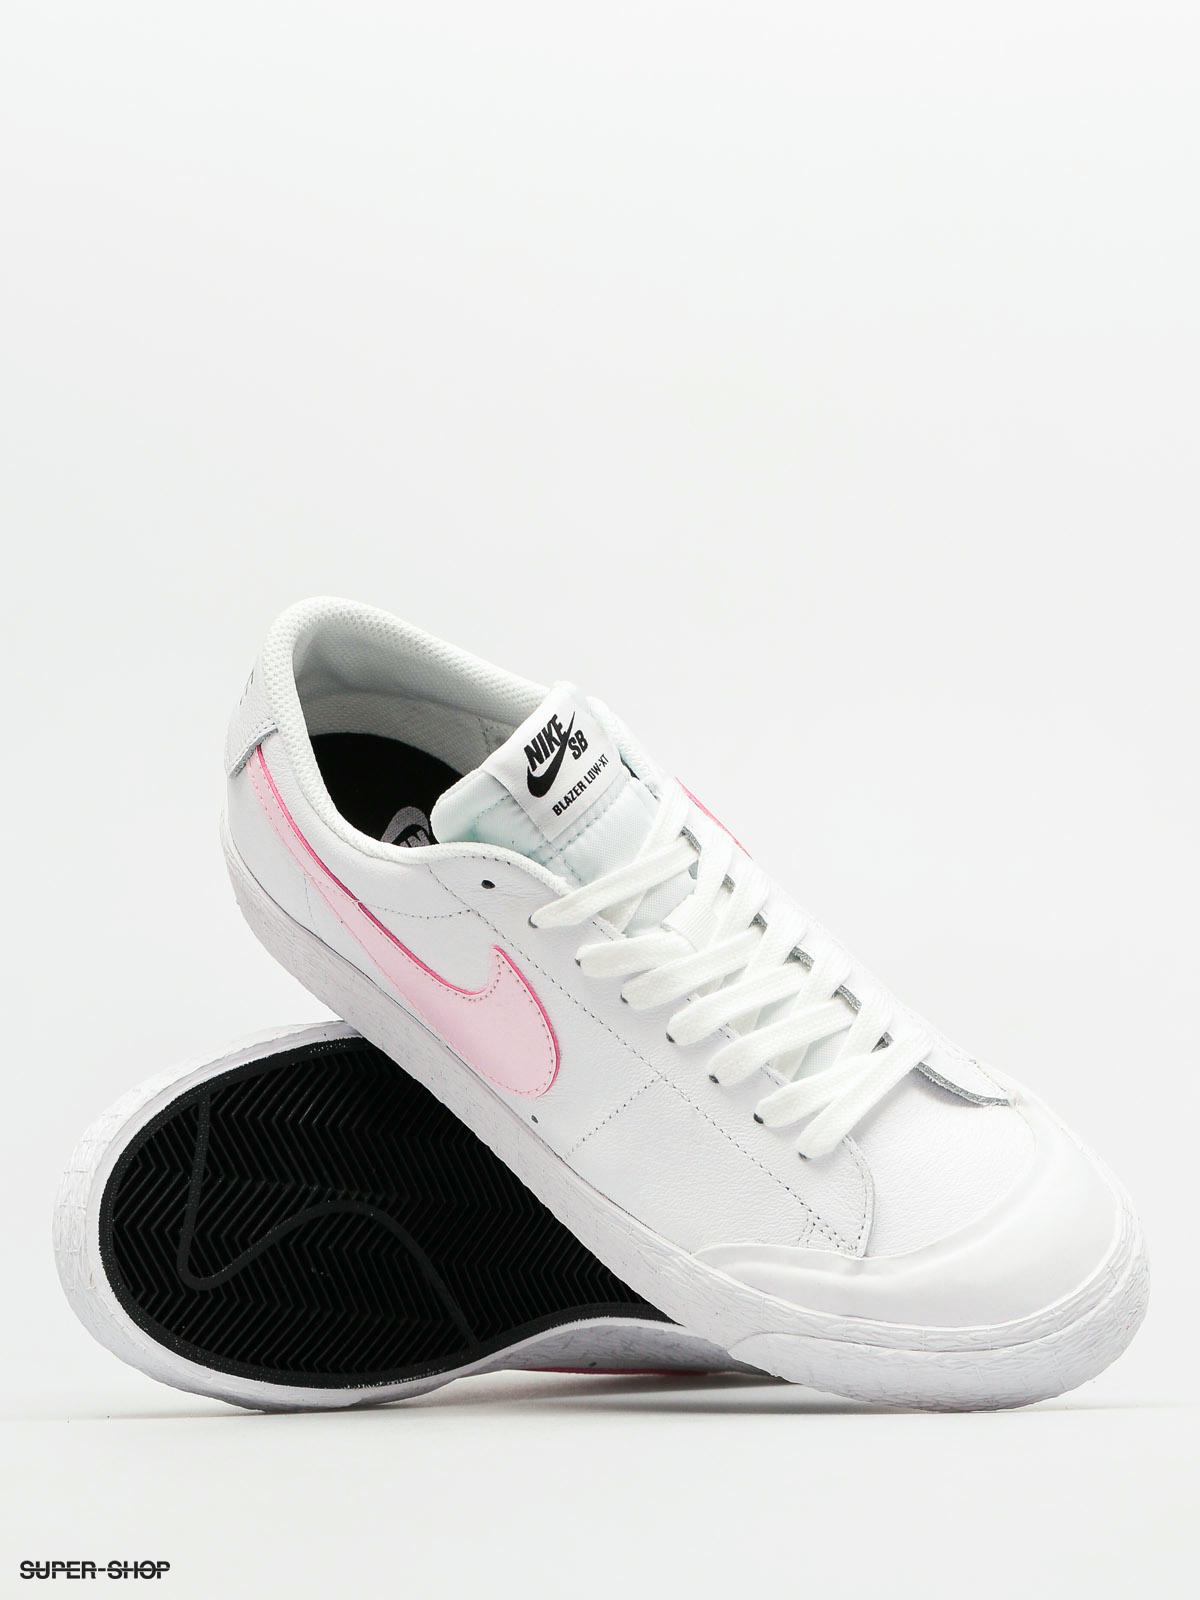 SB Shoes Blazer Xt (white/prism pink black white)